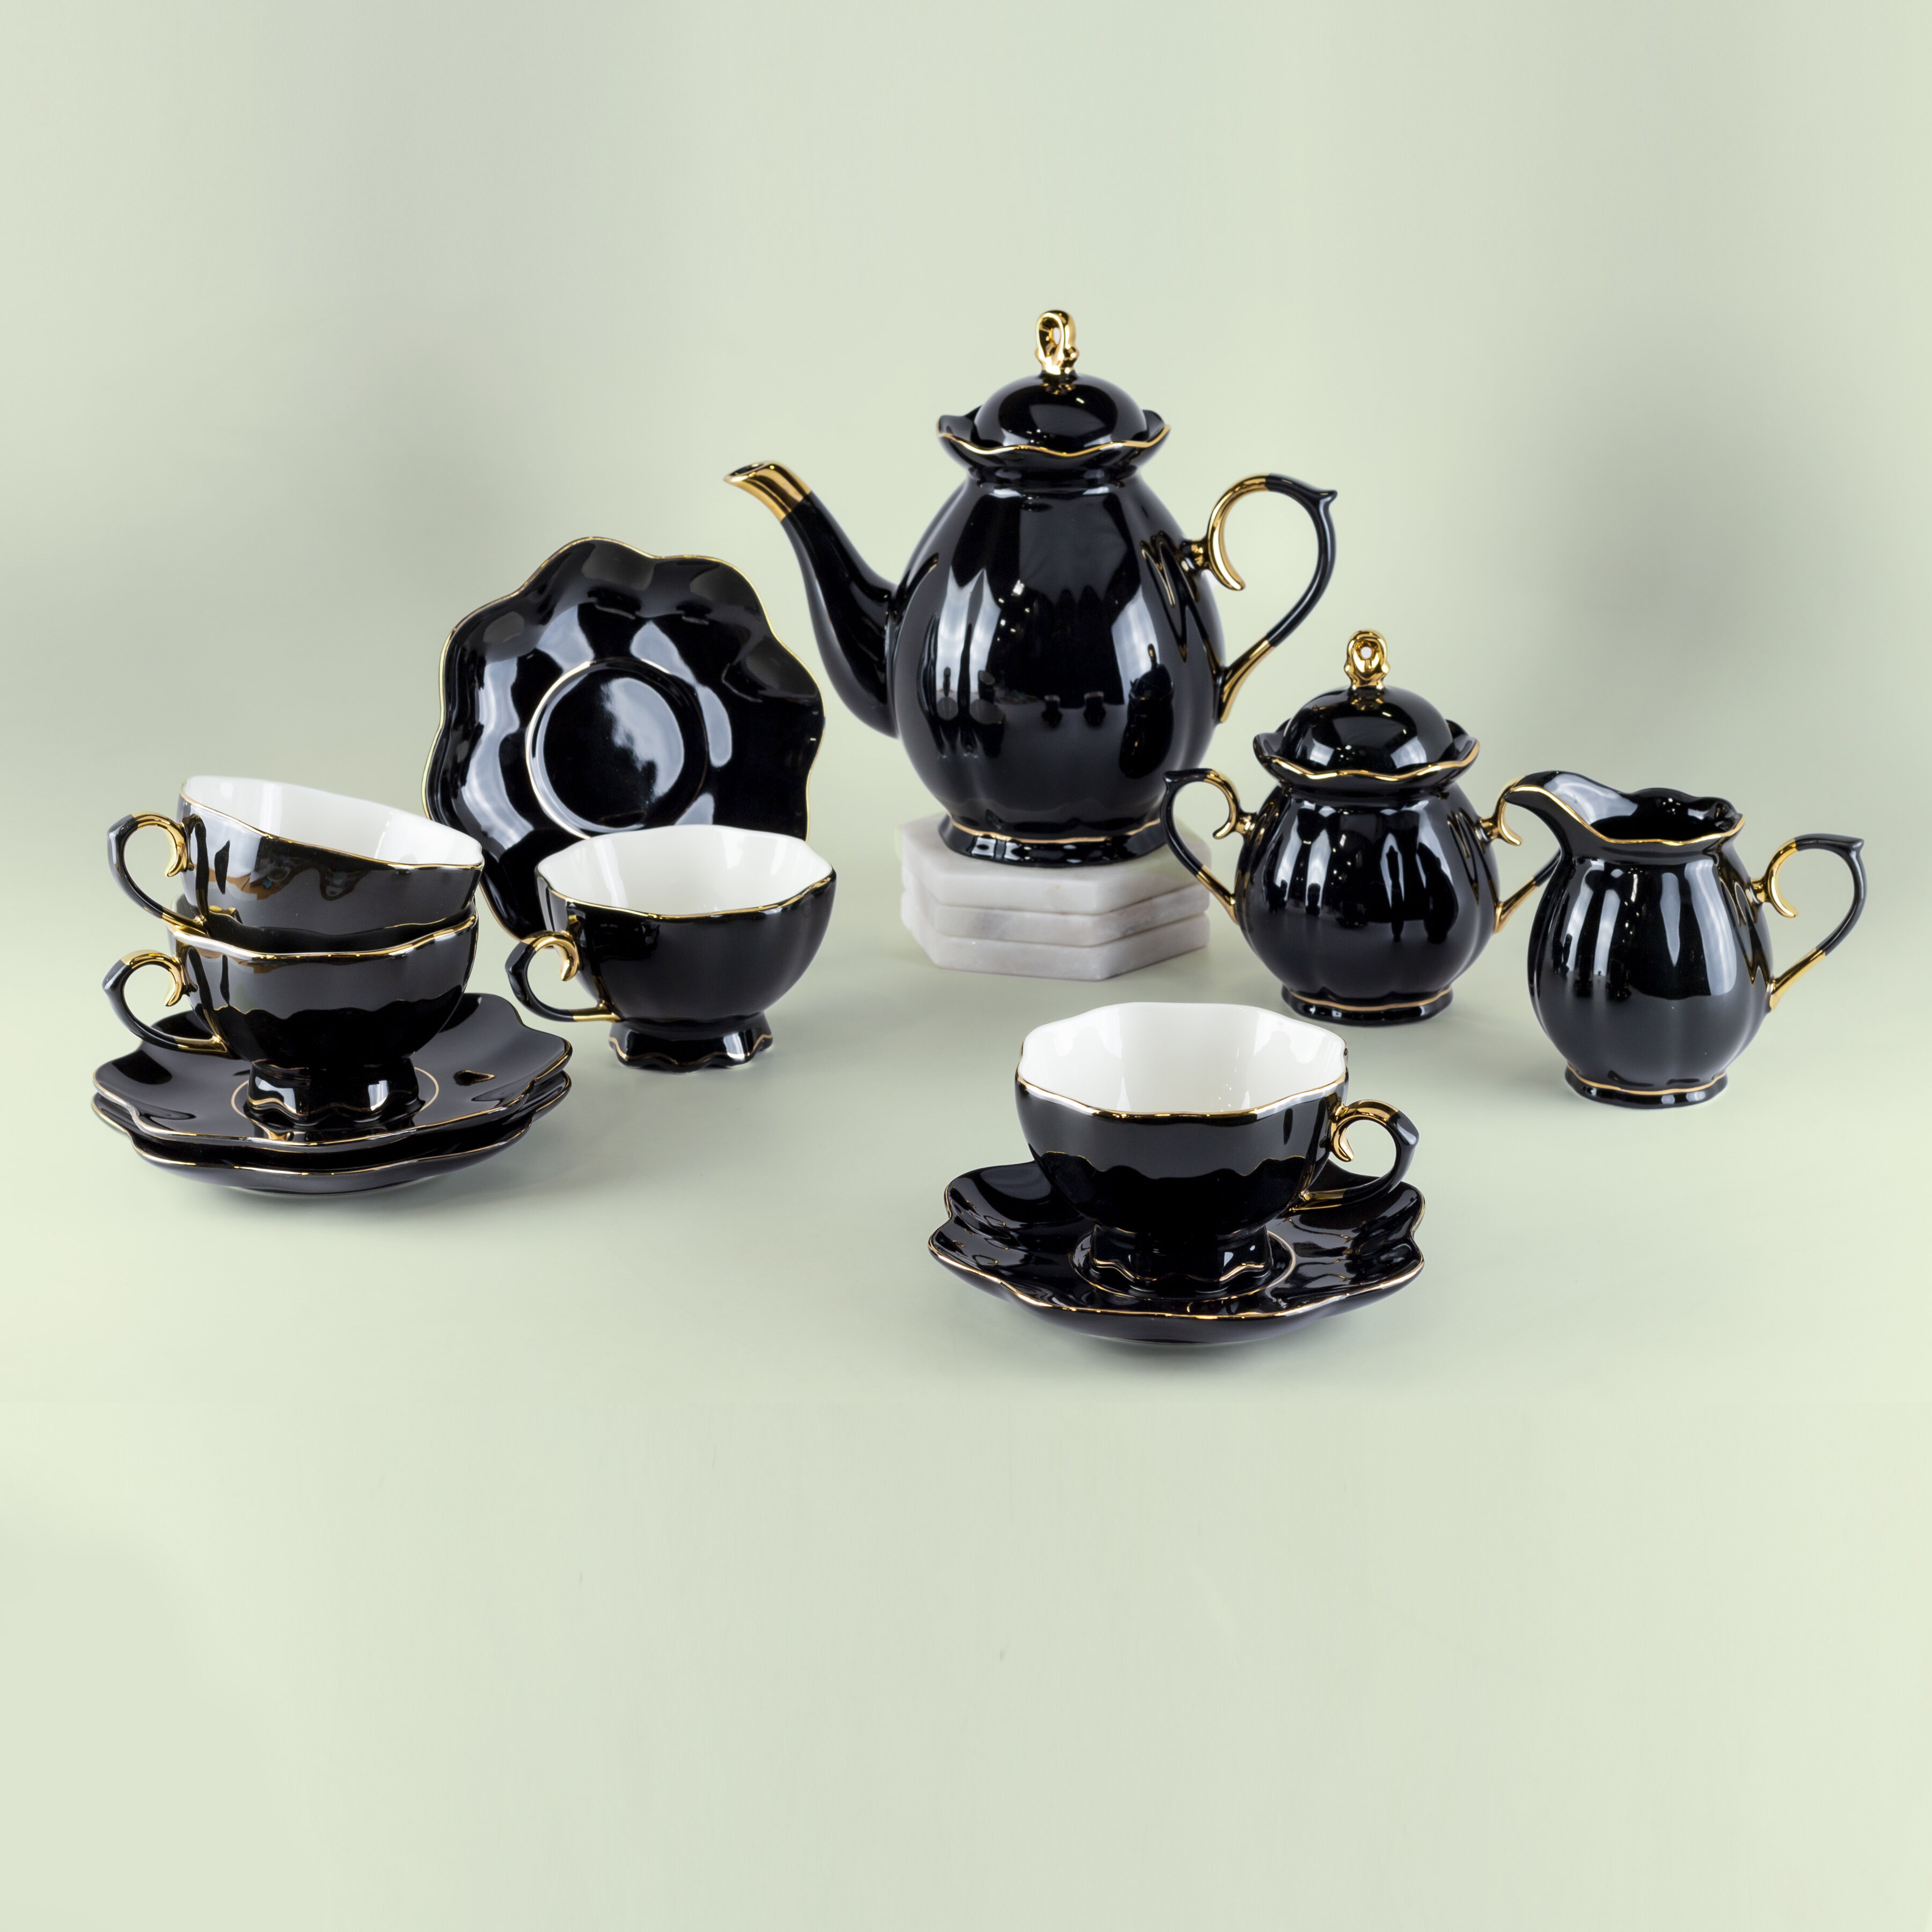 Blaise Porcelain Tea Set for 4 People House of Hampton Color: Black/Gold